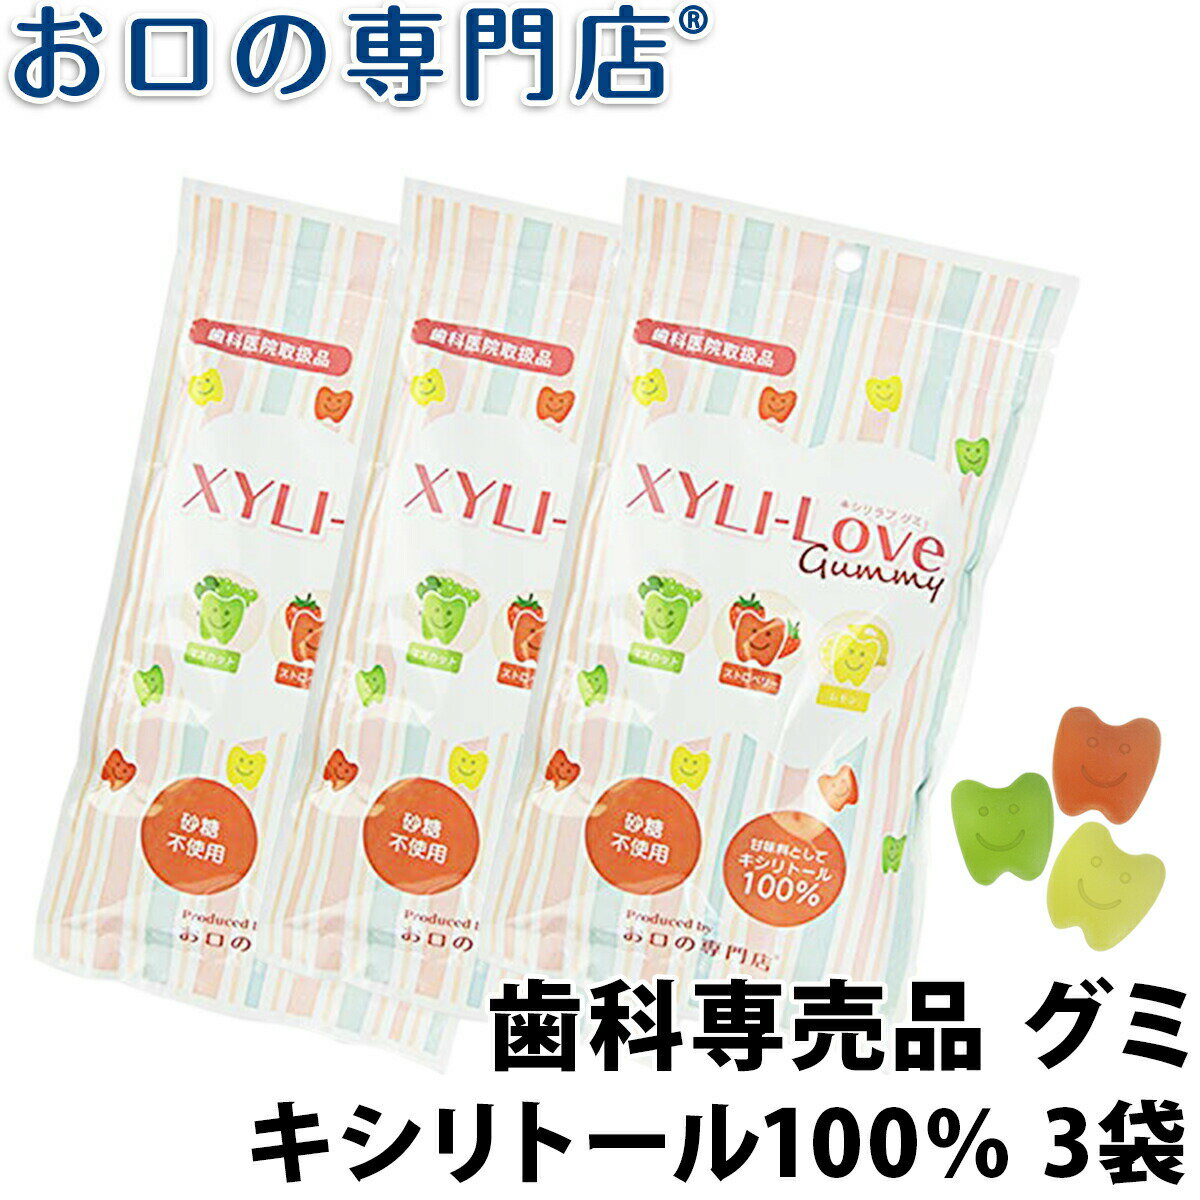 【送料無料】キシリトール100％ XYLI-LOVE(キシリラブ)グミ24粒(96g) ×3袋 歯科専売品